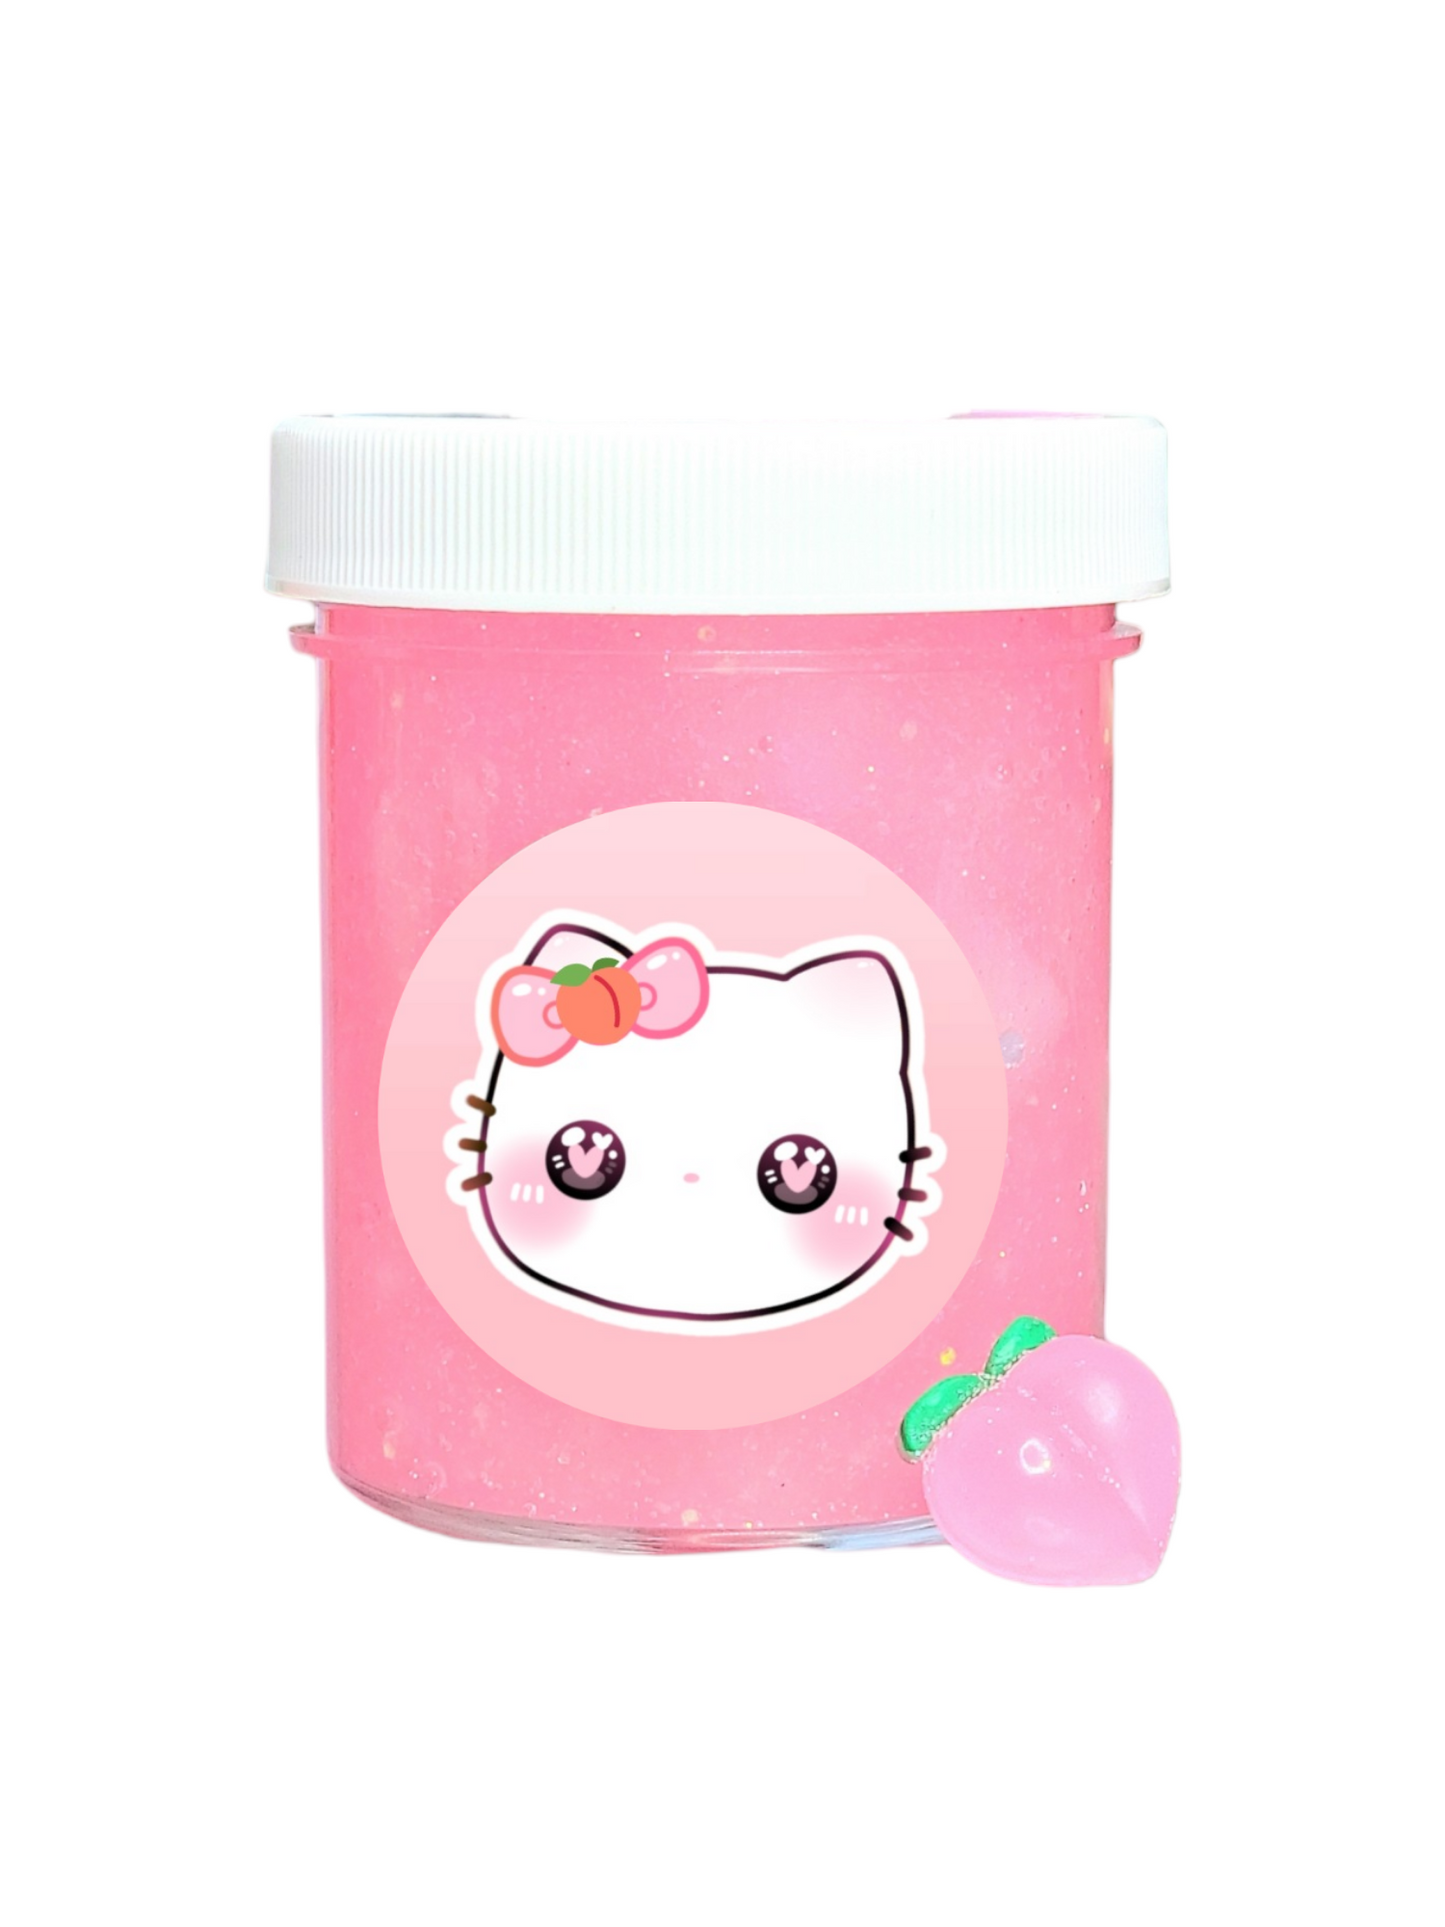 Kitty's Peach Jelly Cube Handmade Slime 4oz Slime by Hoshimi Slimes LLC | Hoshimi Slimes LLC